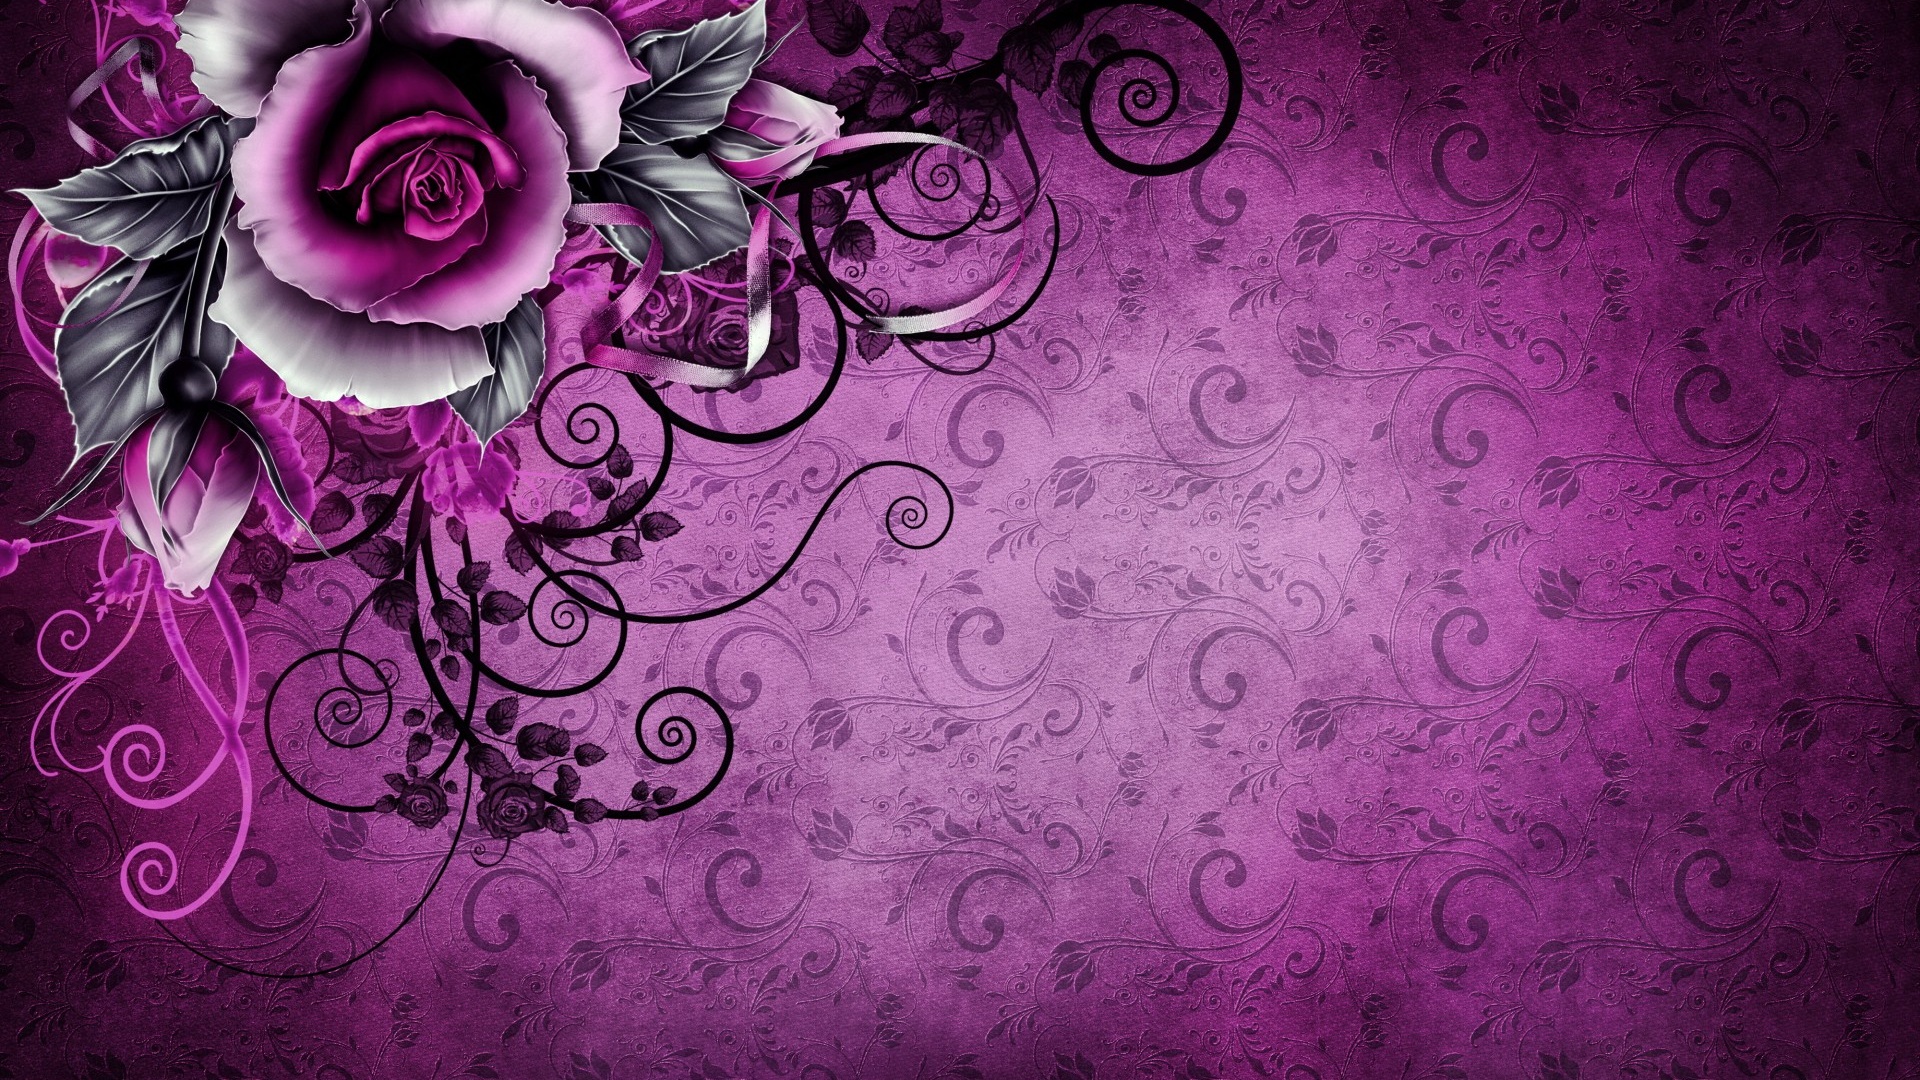 Hoa hồng tím cổ điển là biểu tượng của sự tinh tế và thanh lịch. Hãy chiêm ngưỡng hình ảnh đẹp đến ngỡ ngàng của một bông hoa hồng tím cổ điển, mang đến cho bạn một trải nghiệm tuyệt vời về vẻ đẹp hoa lá và sự giản dị trong phong cách của nó.